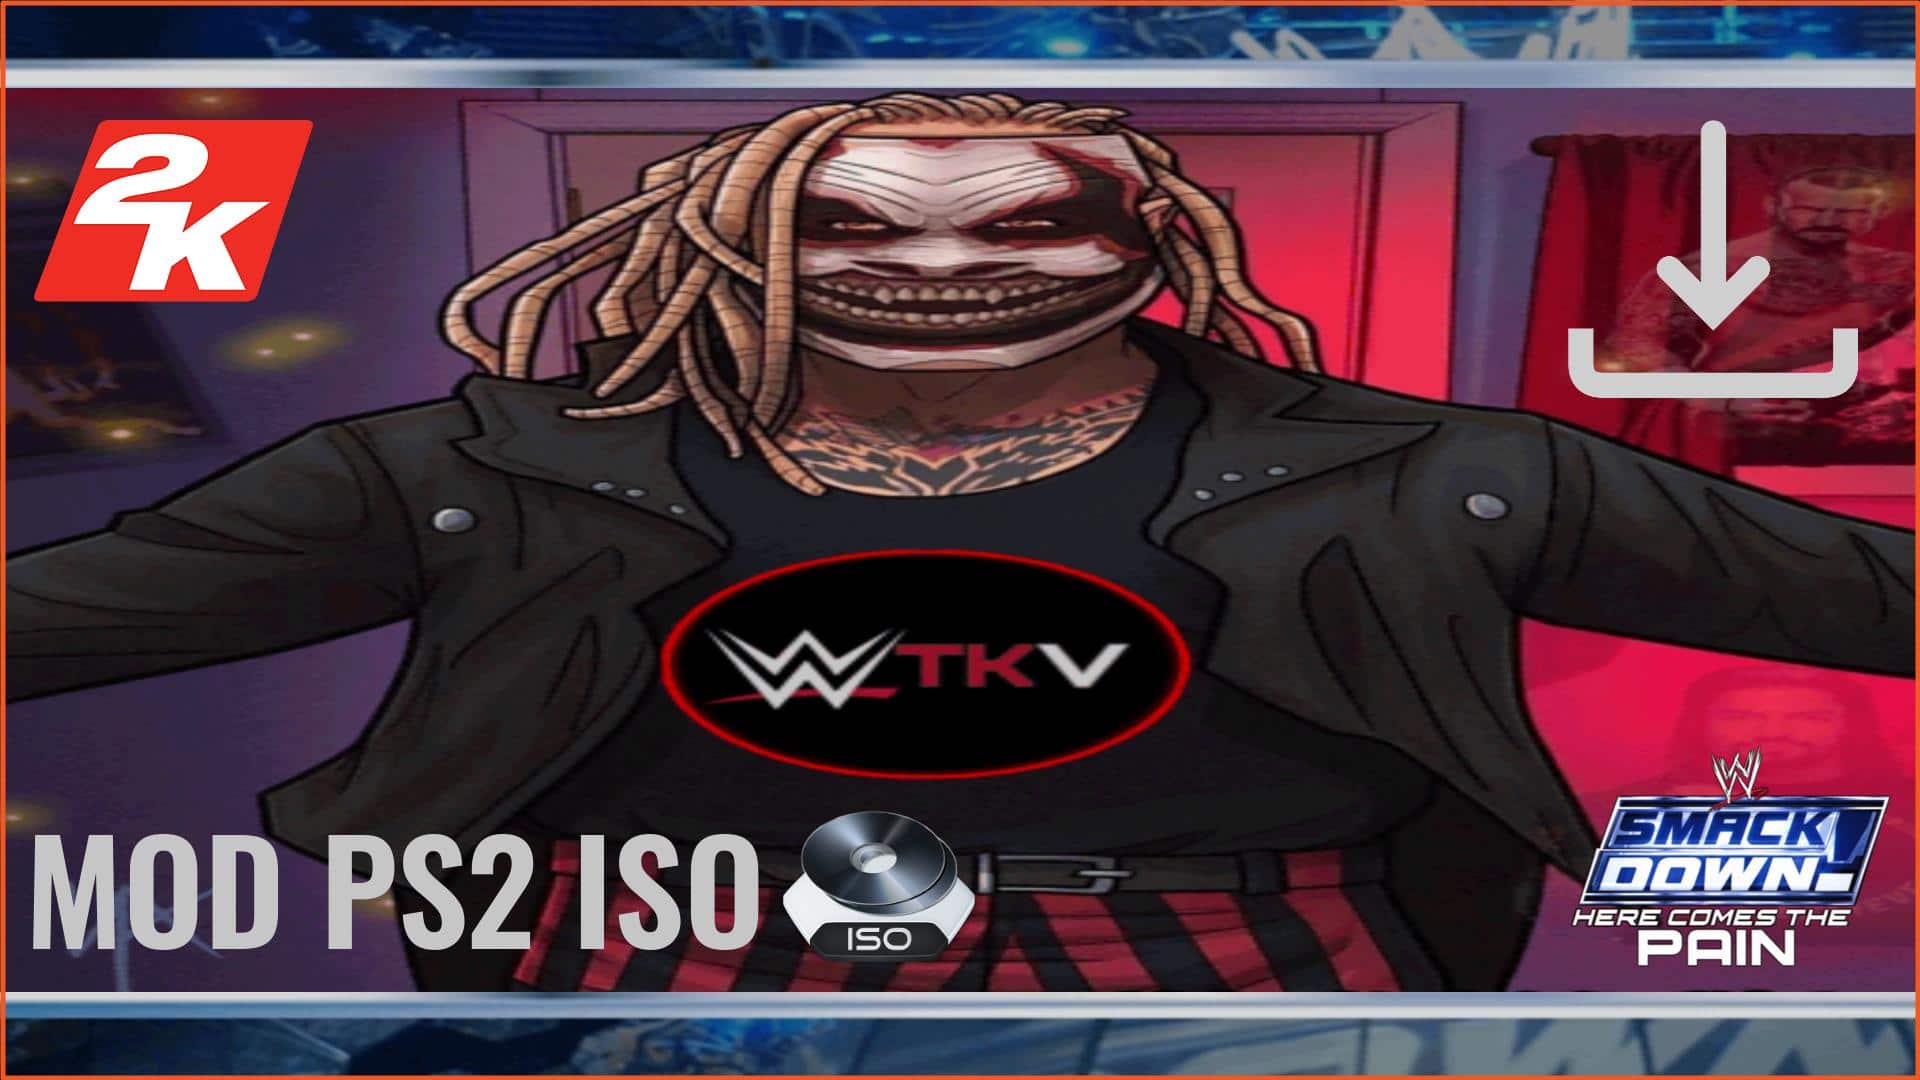 WWE TKV HCTP MOD PS2 ISO Download - SafeROMs